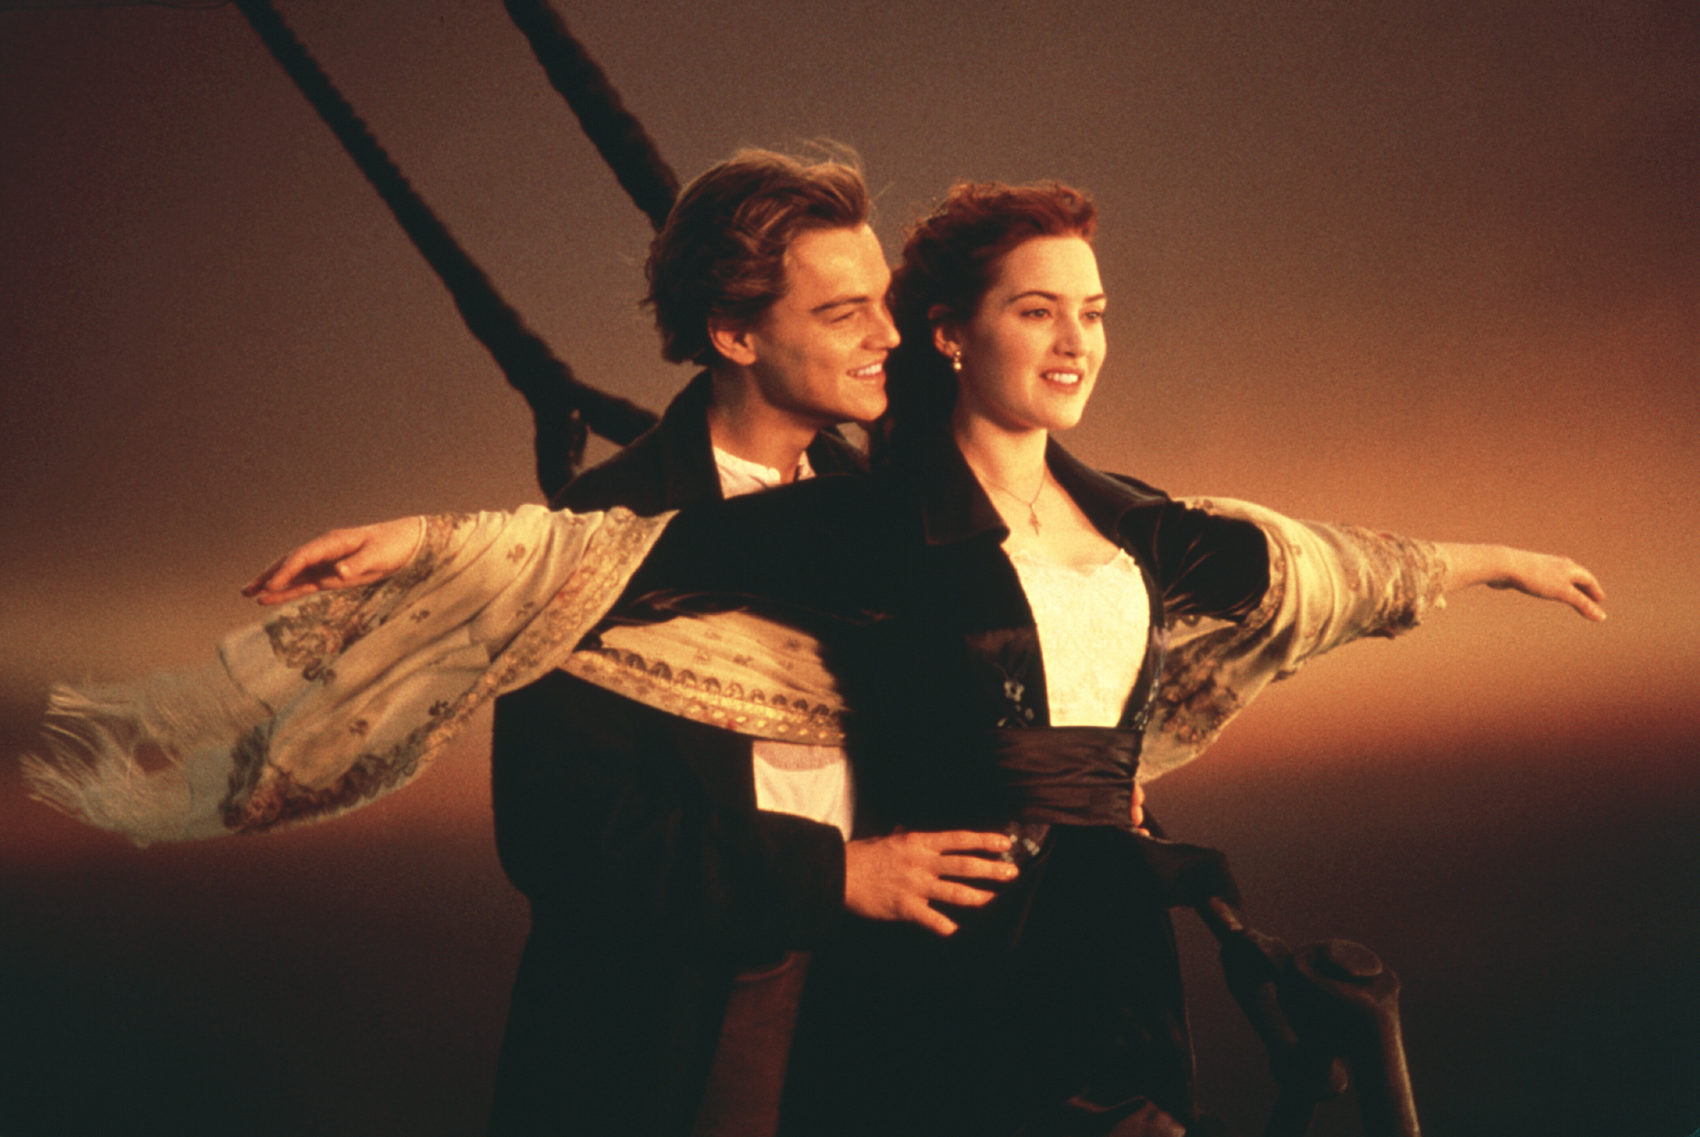 Iconicul Titanic se relansează după 25 de ani, într-o versiune îmbunătățită, 3D /VIDEO! Filmul a avut încasări de 2,2 miliarde de dolari